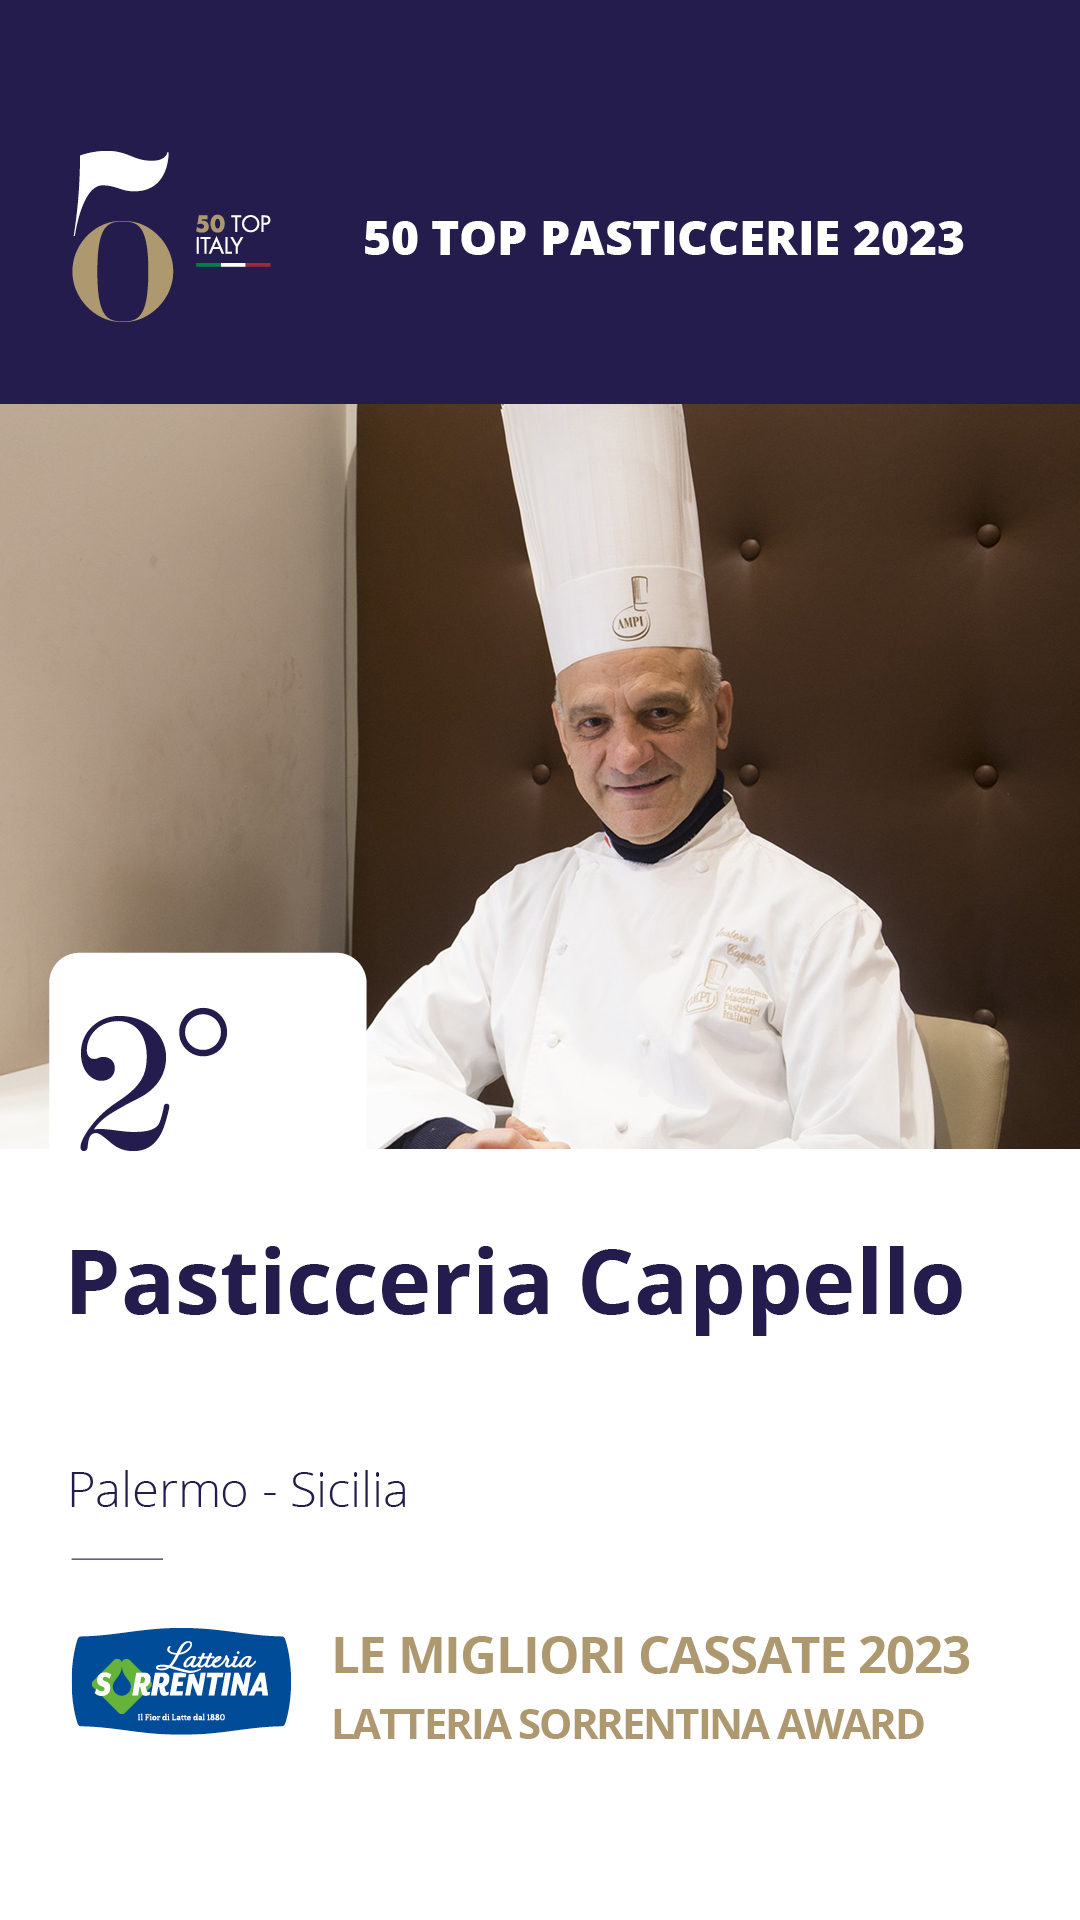 2 - Pasticceria Cappello - Palermo, Sicilia